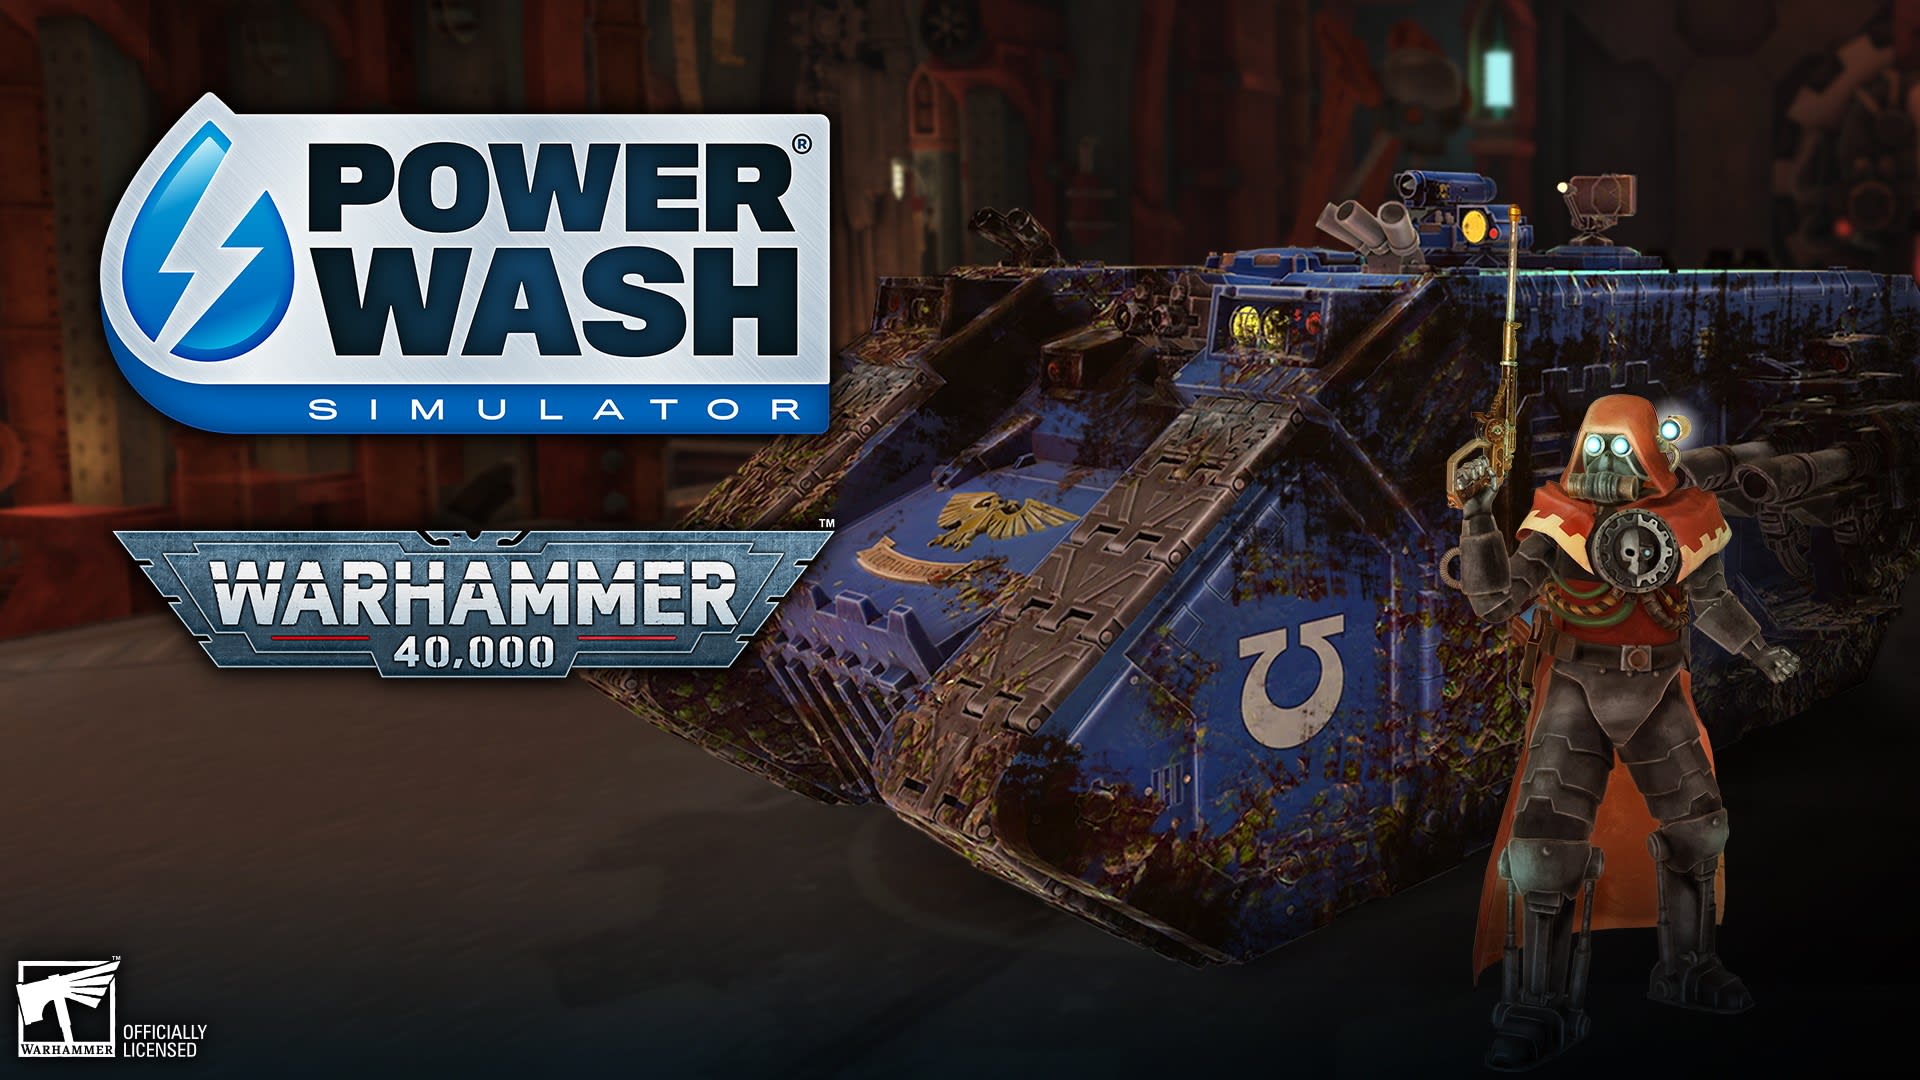 PowerWash Simulator - Paquete especial de Warhammer 40,000 1